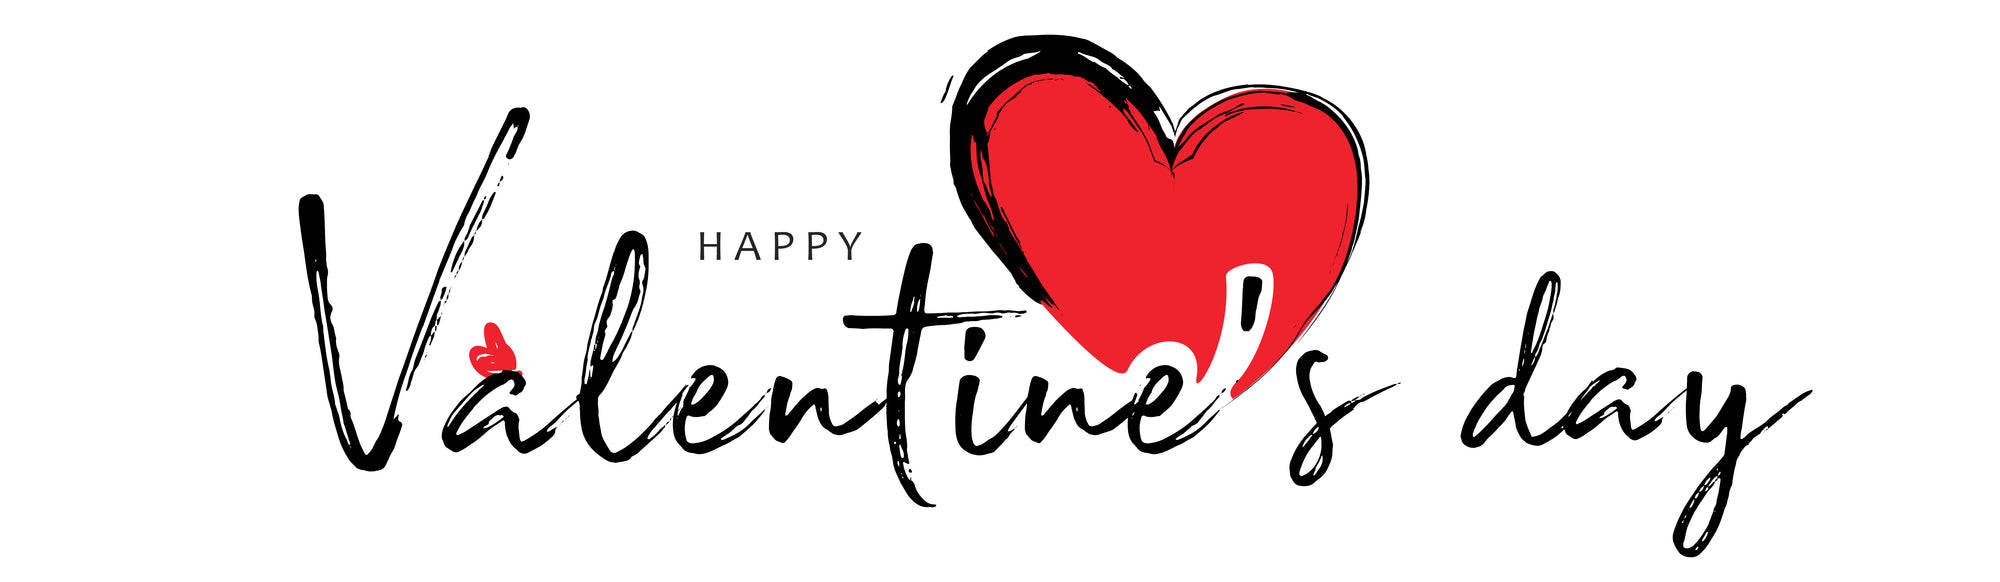 Beautiful Valentine's DAy Gifts for your loved one. Regalo de San Valentin, Regalo oara el Día del Amor y la Amistad 